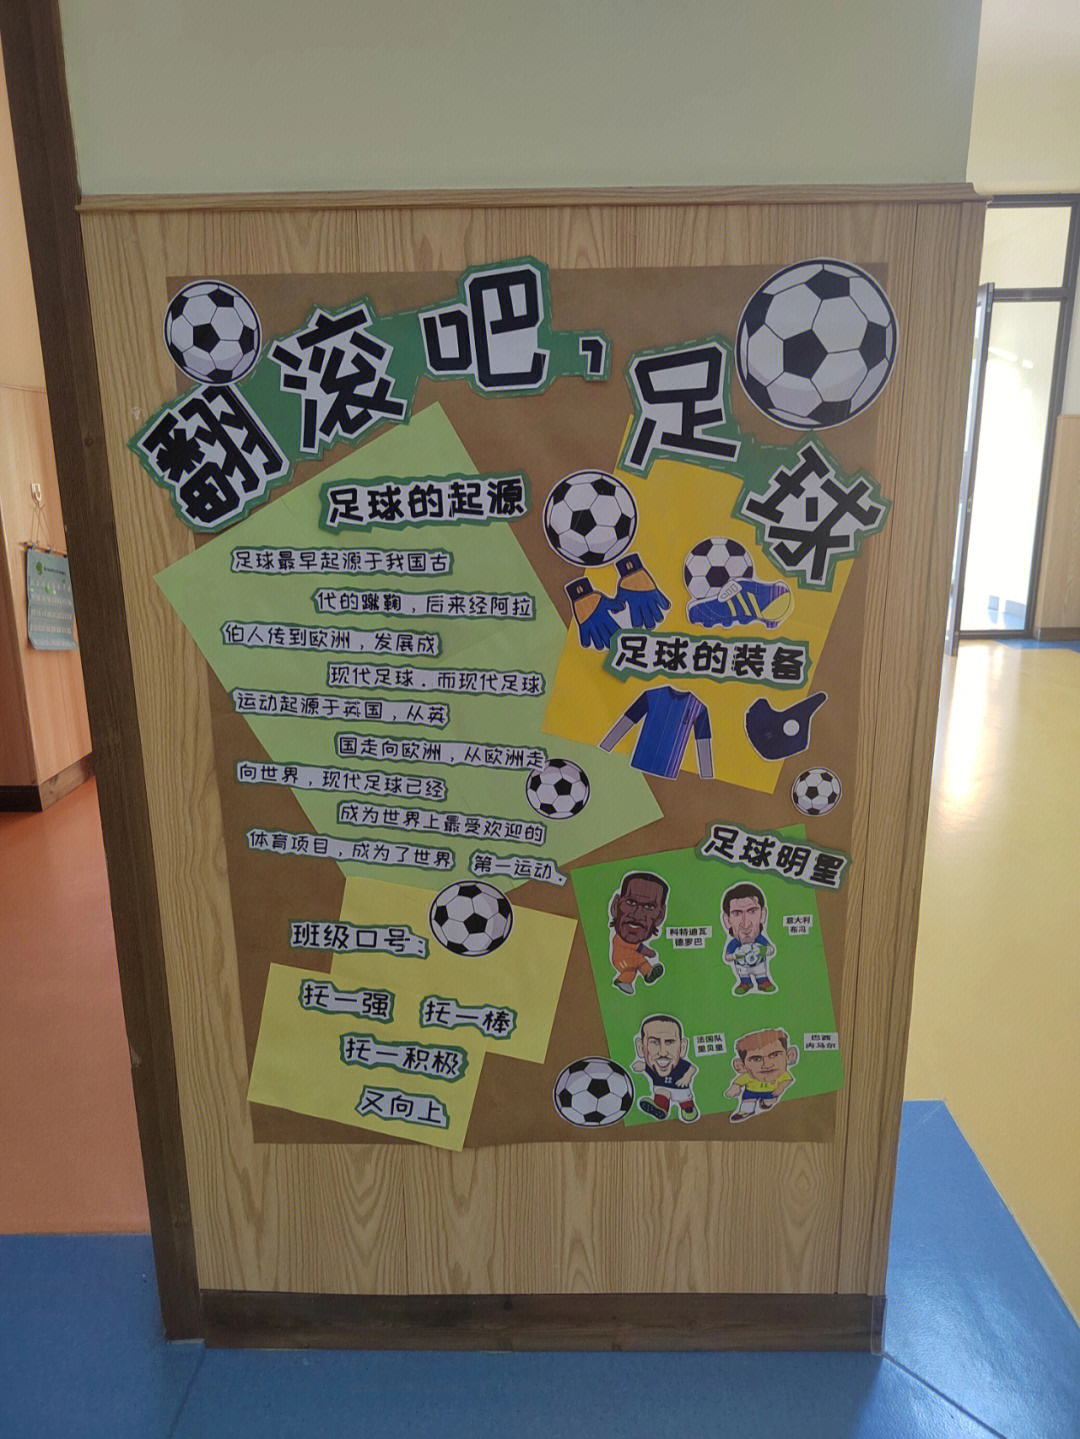 幼儿园成为足球示范园所7115足球主题环创安排起来